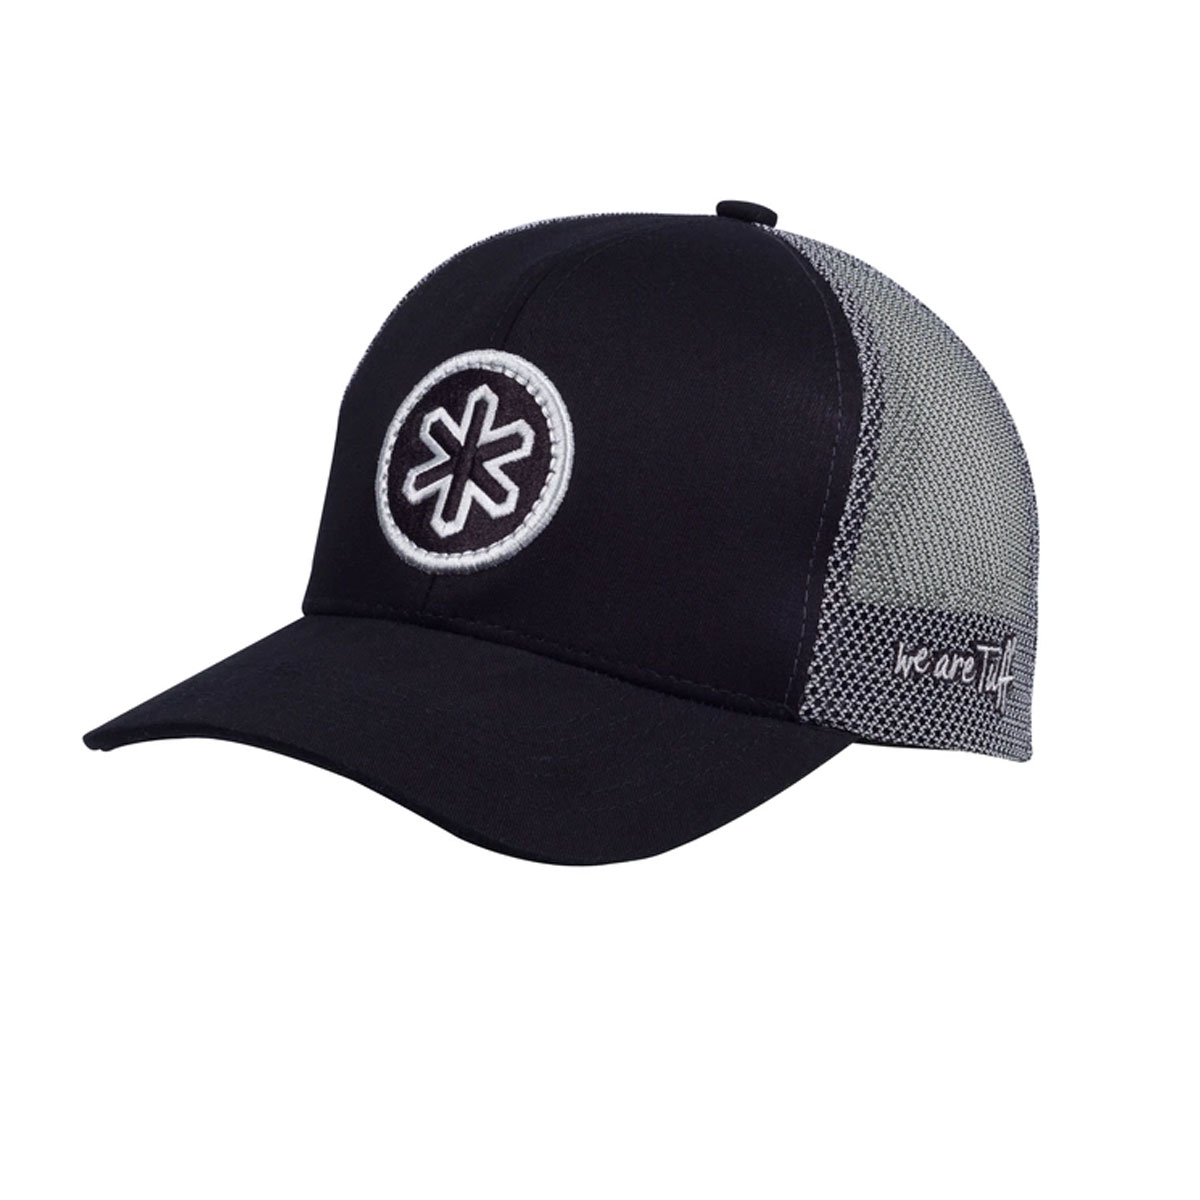 Boné Tuff preto com logo e tela cinza CAP 1467